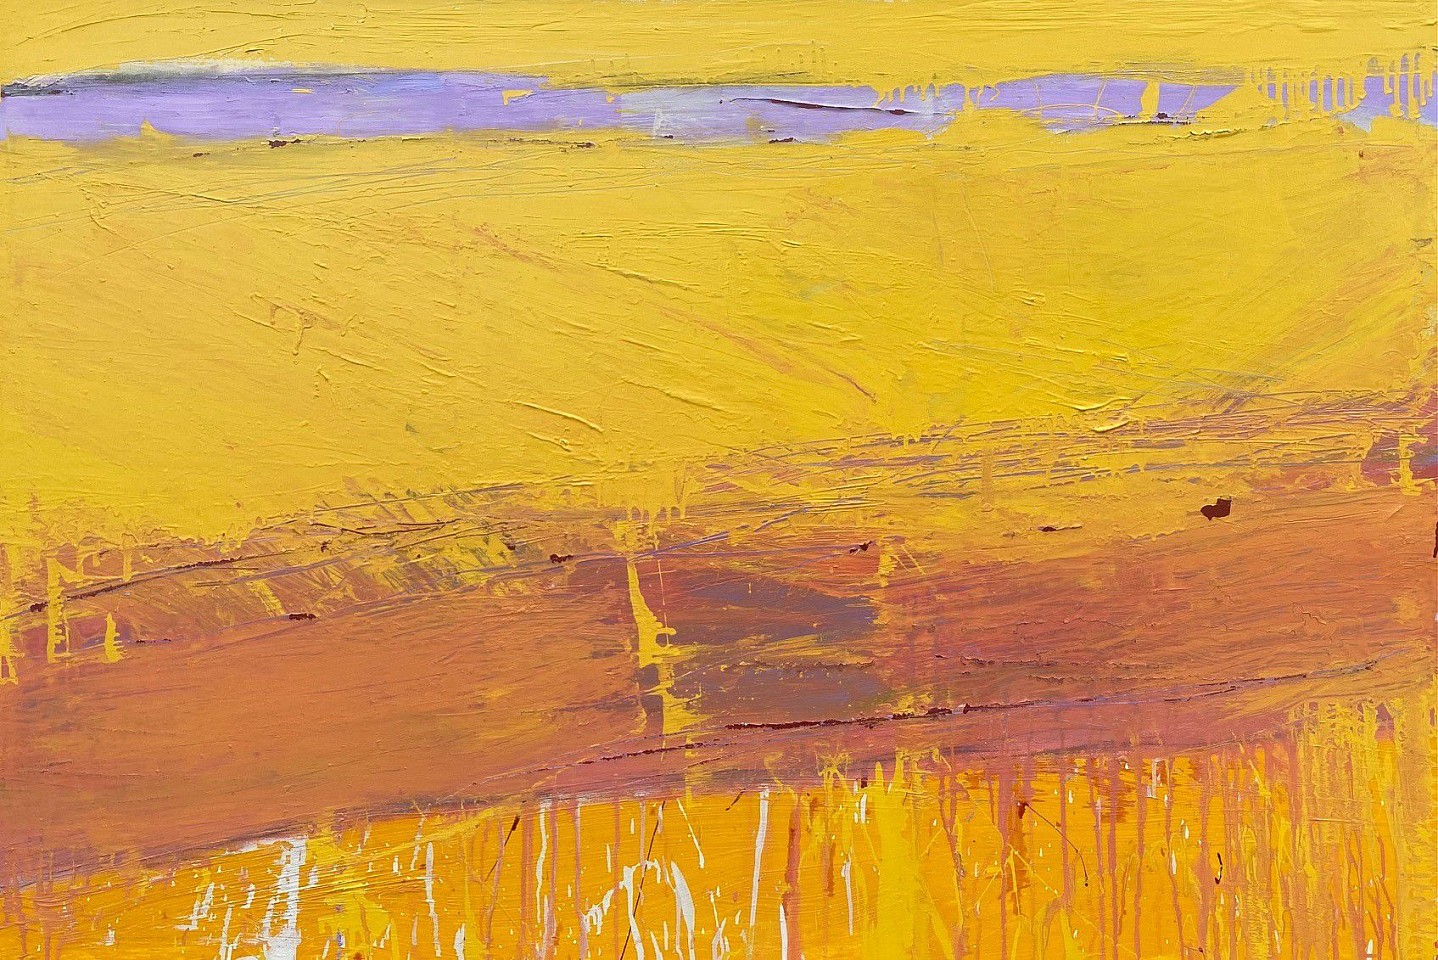 Helen Cantrell, Narragansett Gold
oil on canvas, 40"" x 60""
HC 0523.04
$6,000